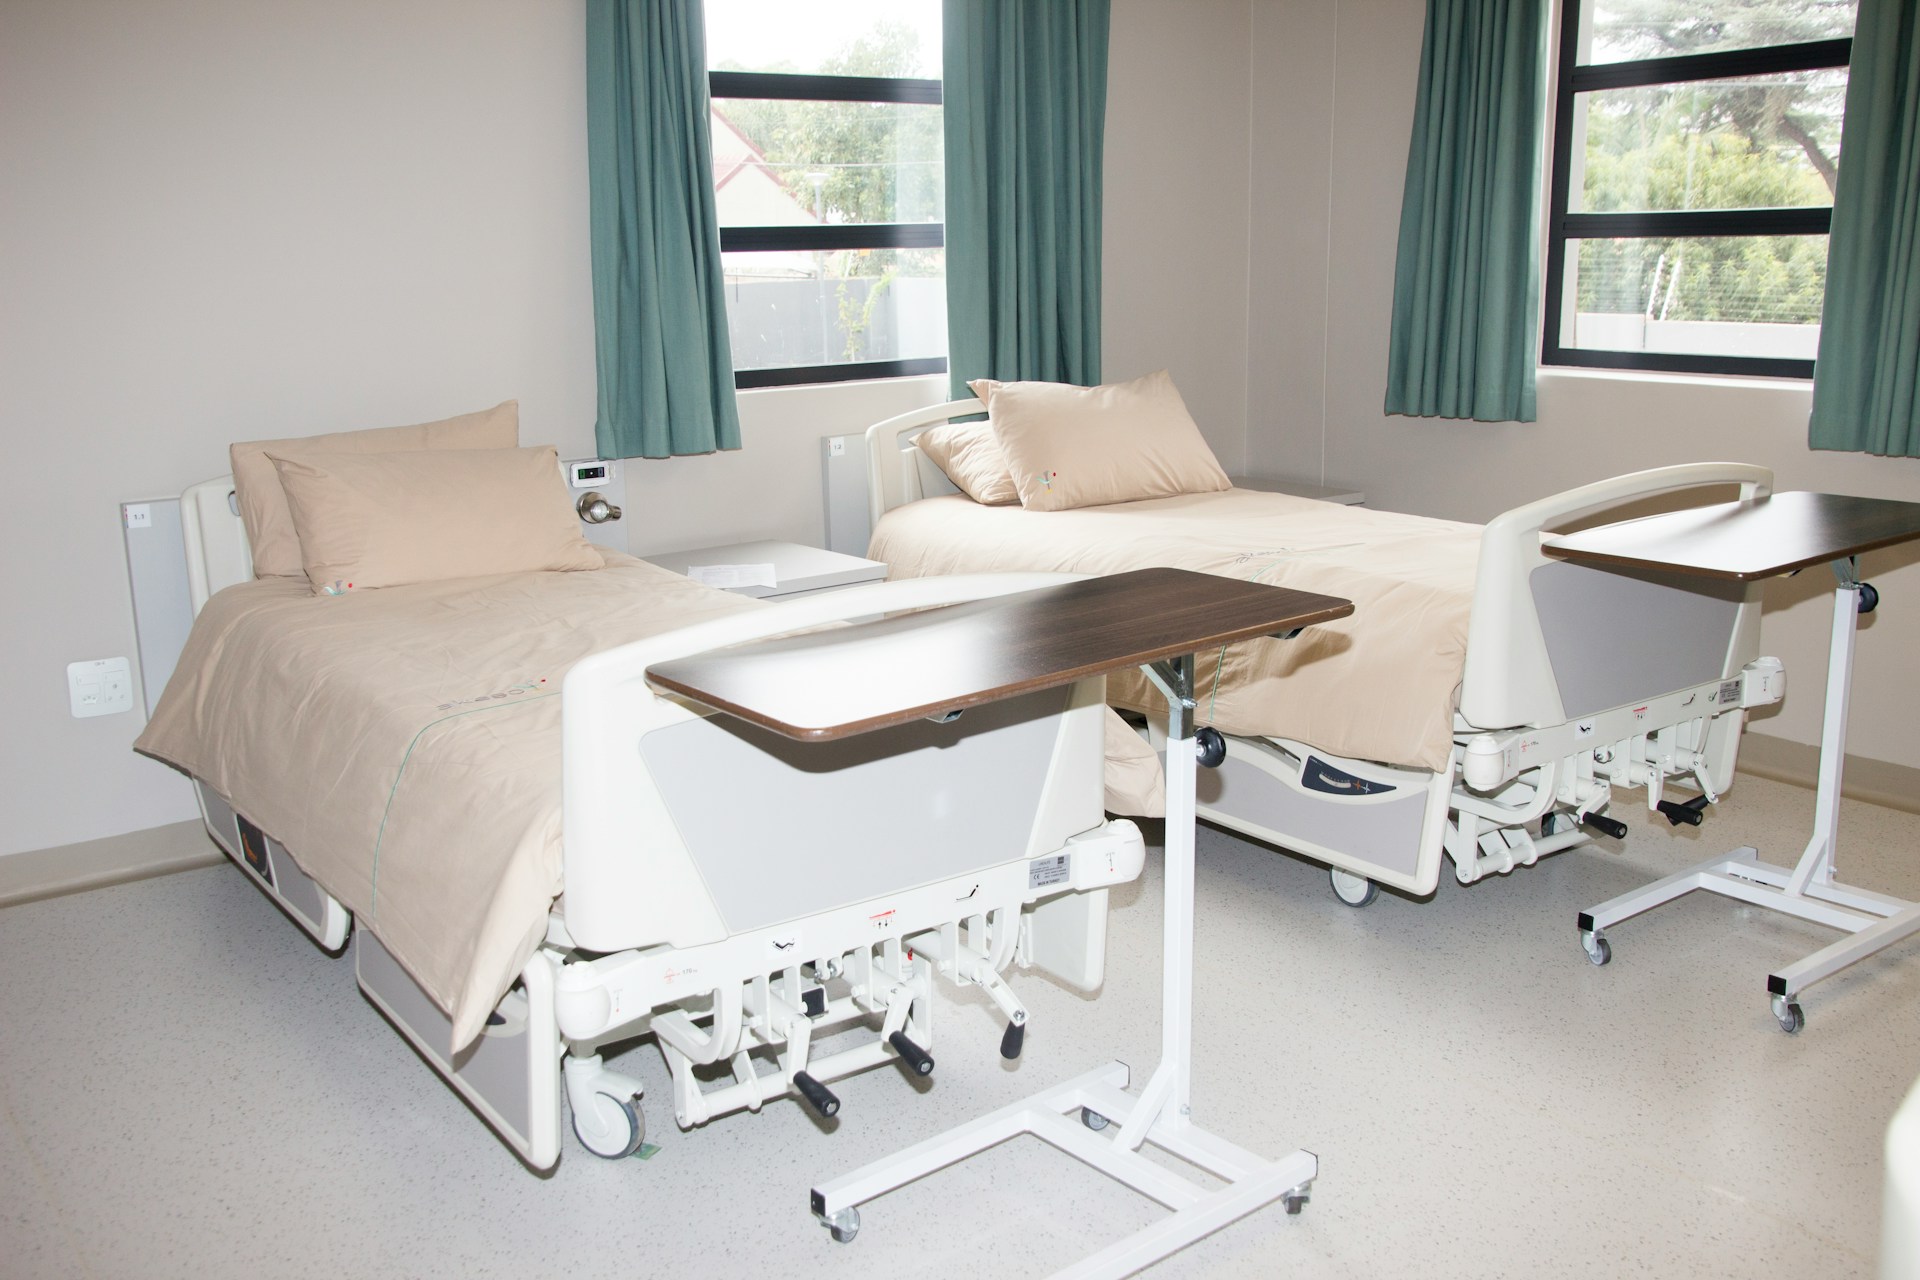 Jakie powinno być łóżko szpitalne?